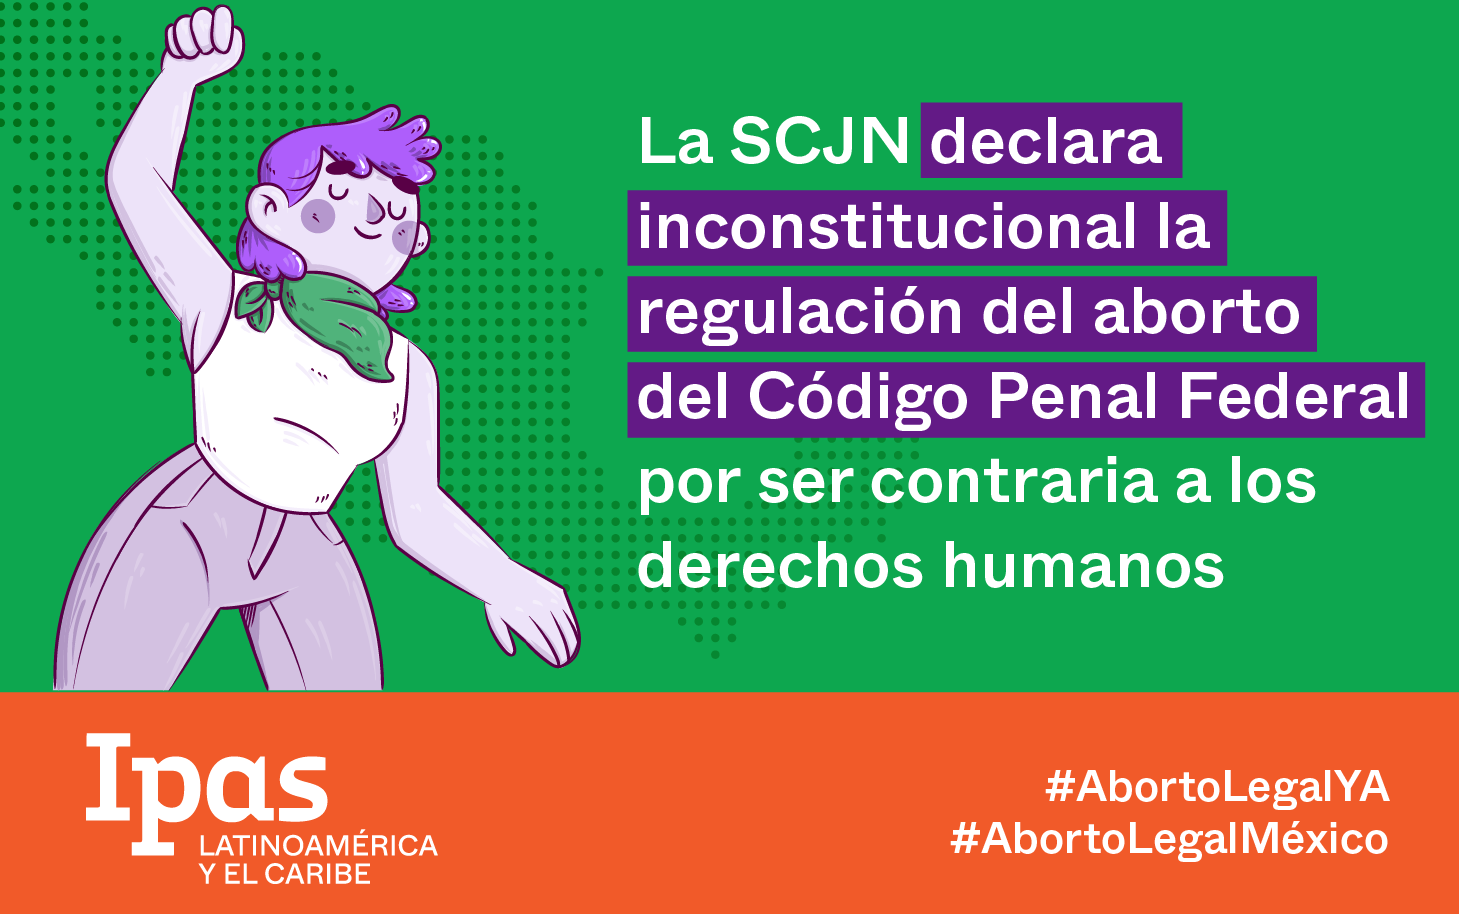 Día histórico. La SCJN declara inconstitucional la regulación del aborto del Código Penal Federal por ser contraria a los derechos humanos